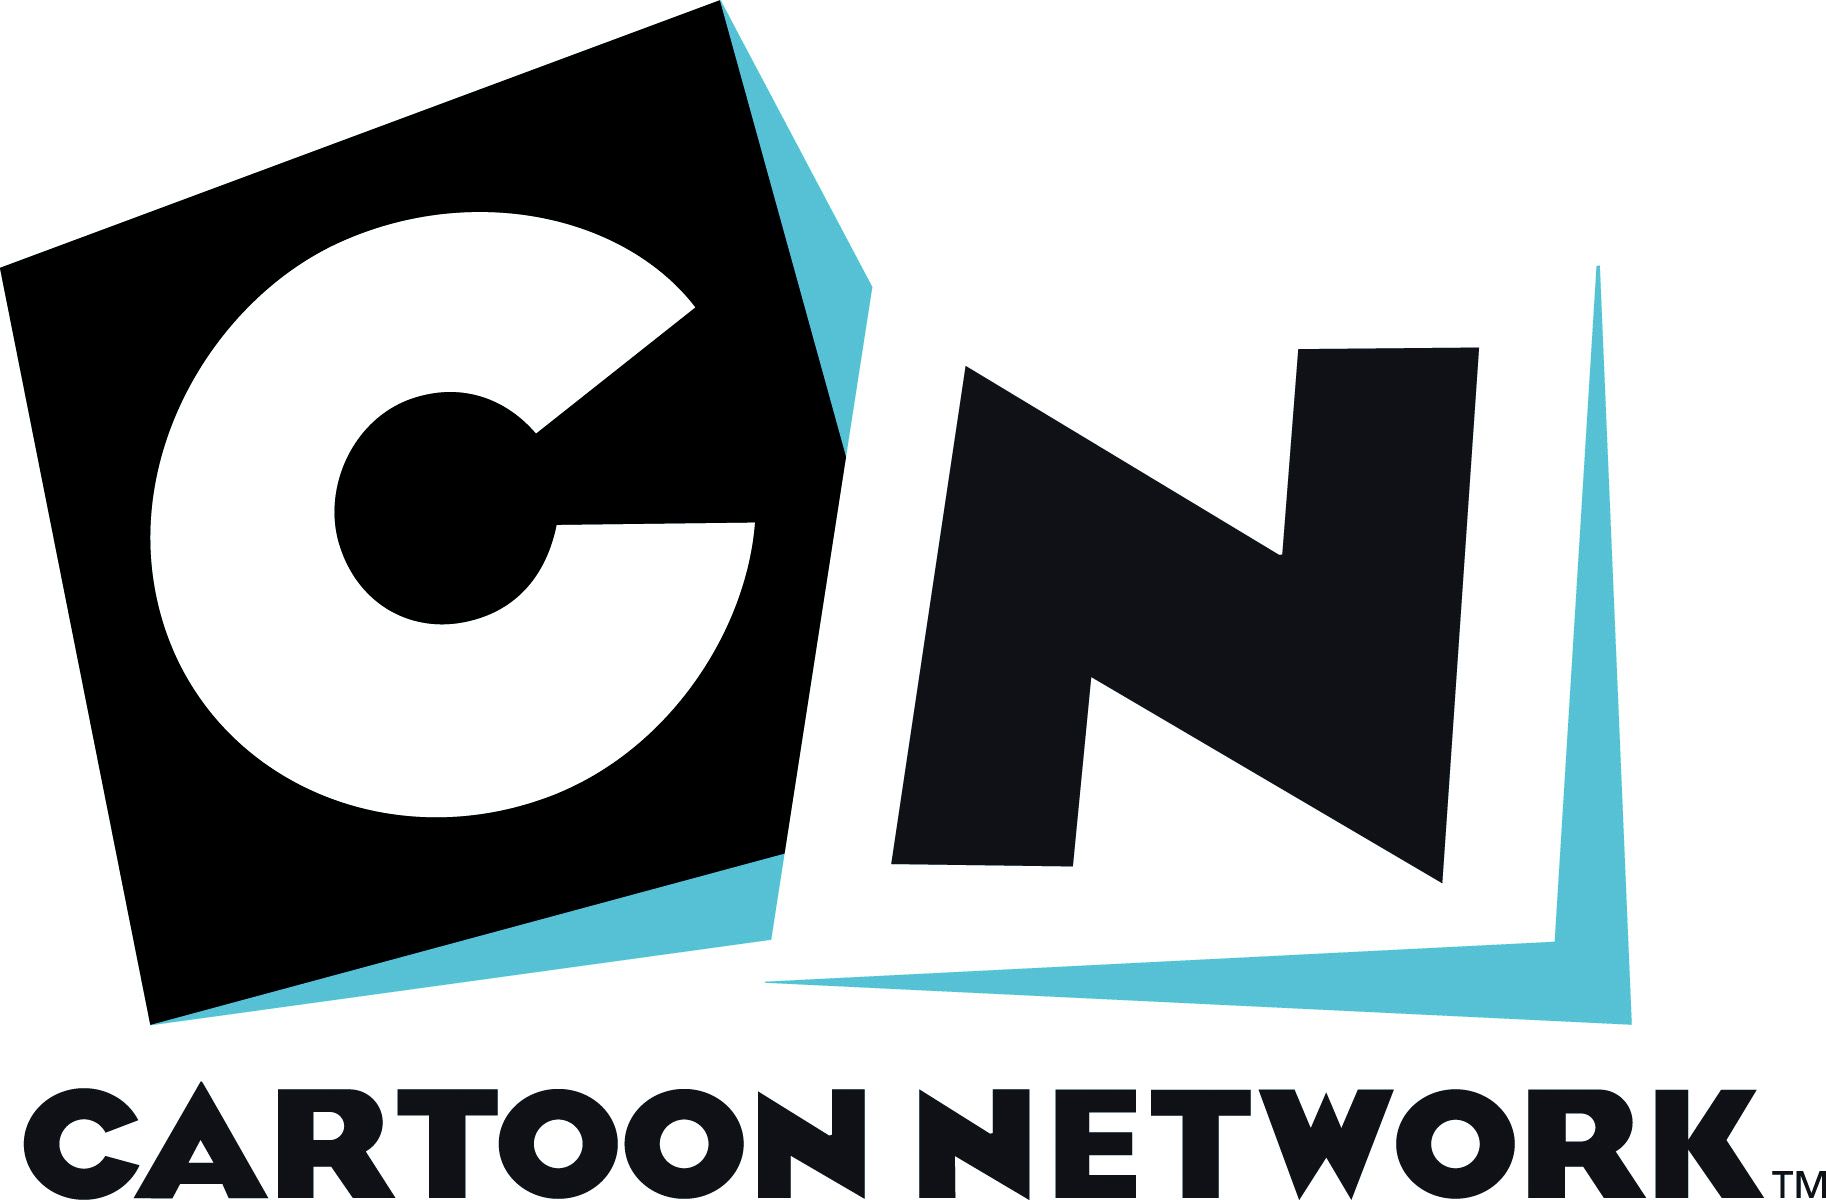 Preview Cartoon Network Wallpaper , HD Wallpaper & Backgrounds